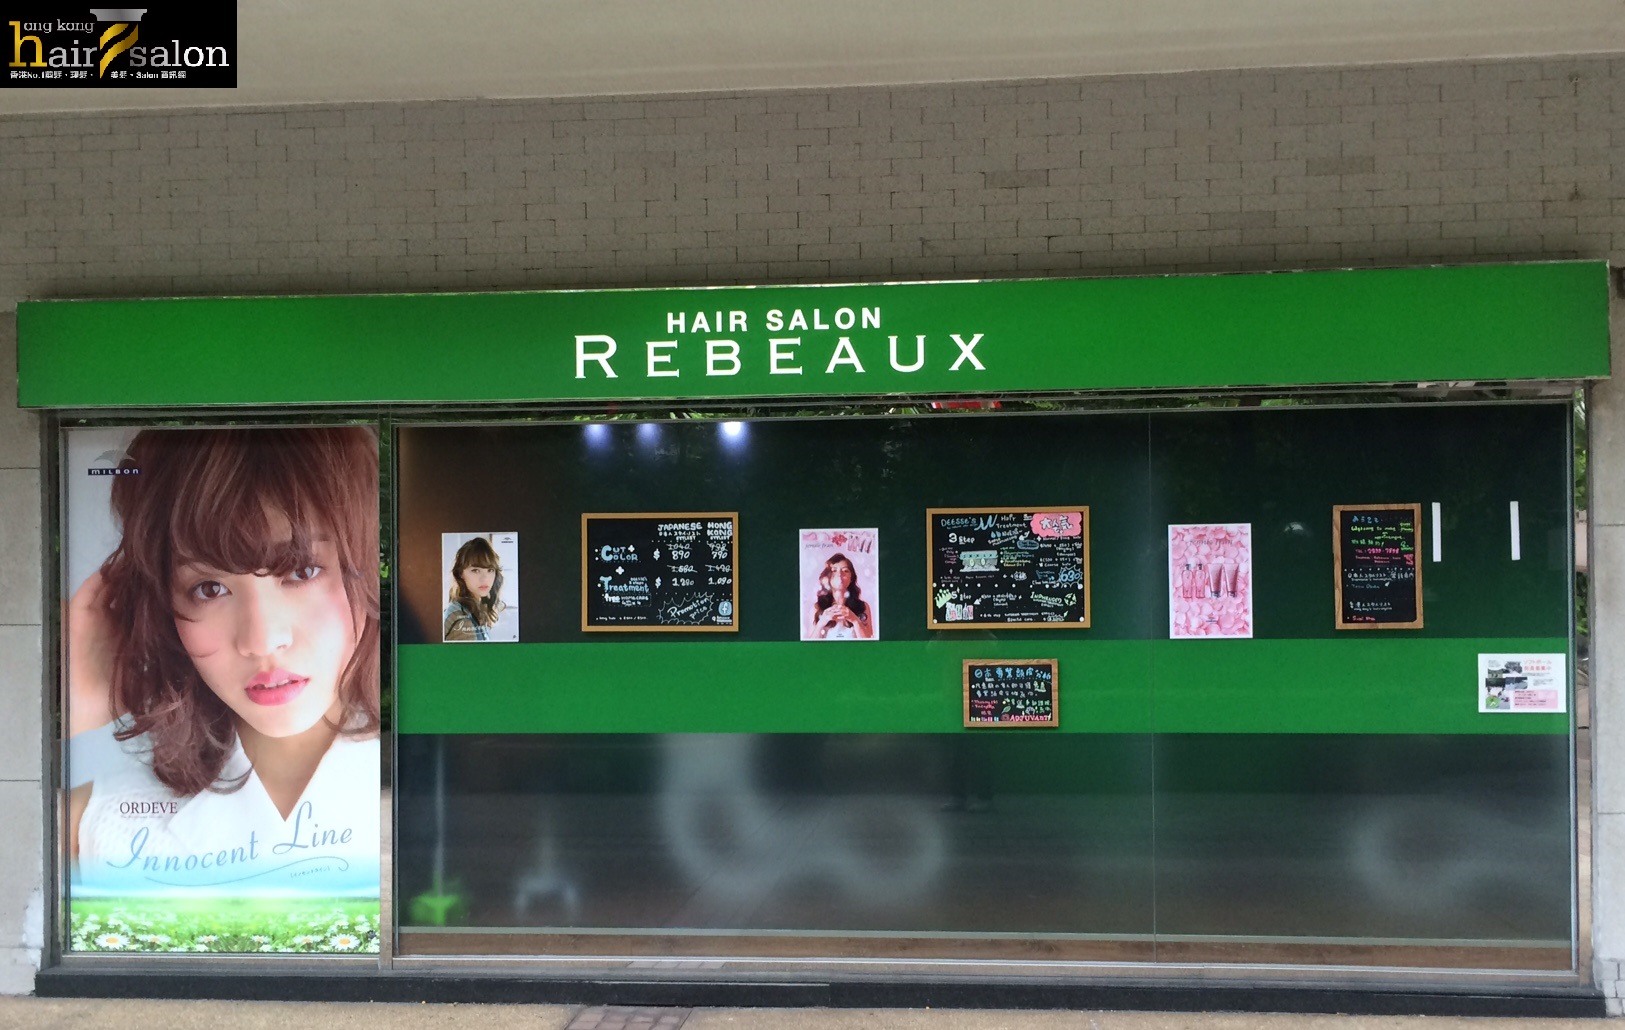 髮型屋 Salon: Rebeaux Hair Salon